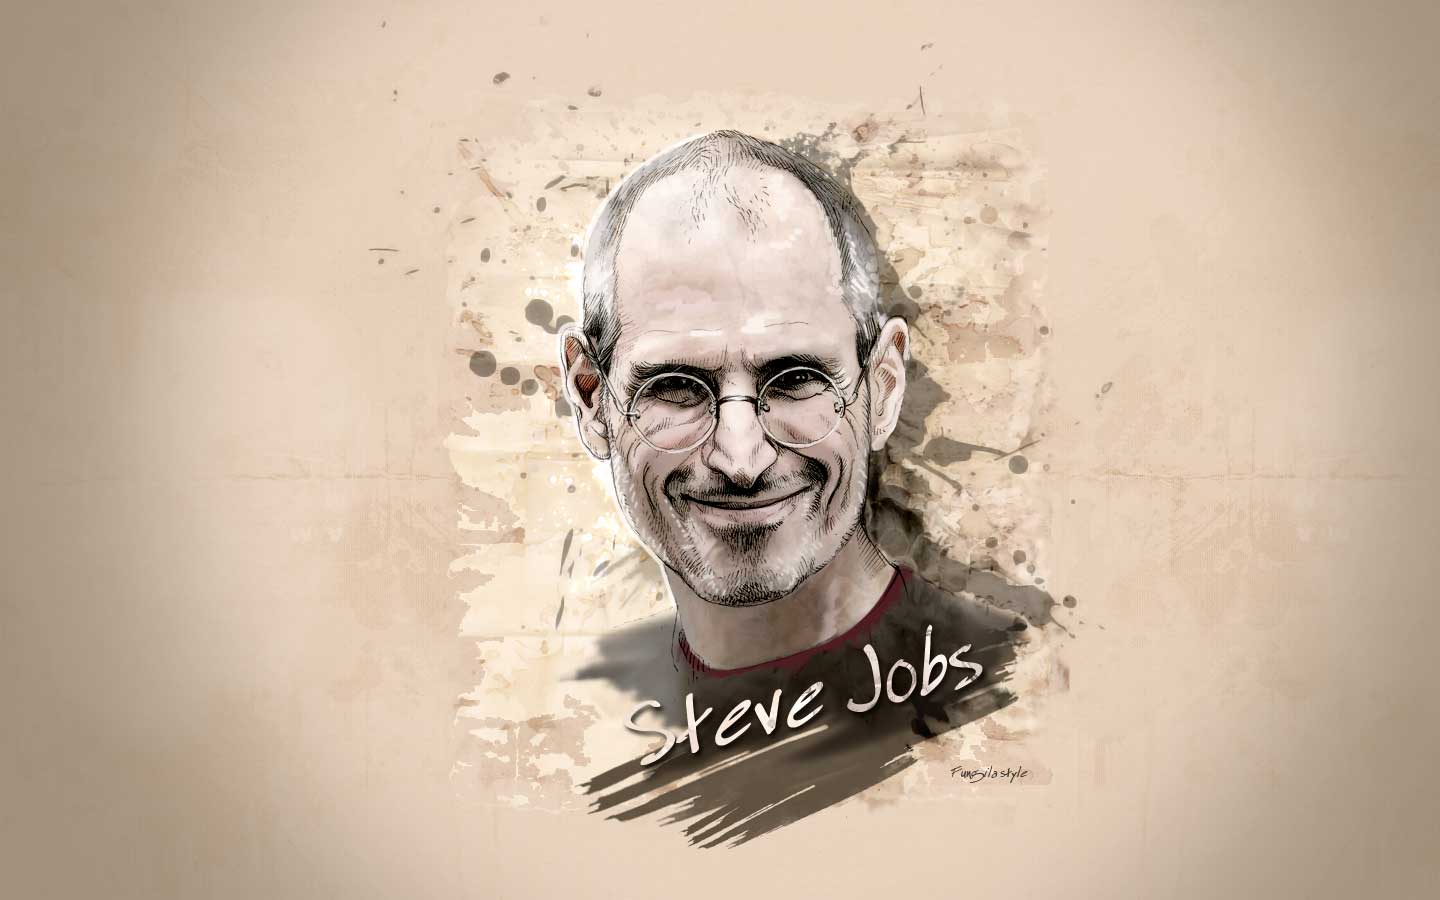 Steve Jobs Wallpaper. Steve Jobs Wallpaper, Steve Jobs iPhone Wallpaper and Steve Jobs Quotes Wallpaper